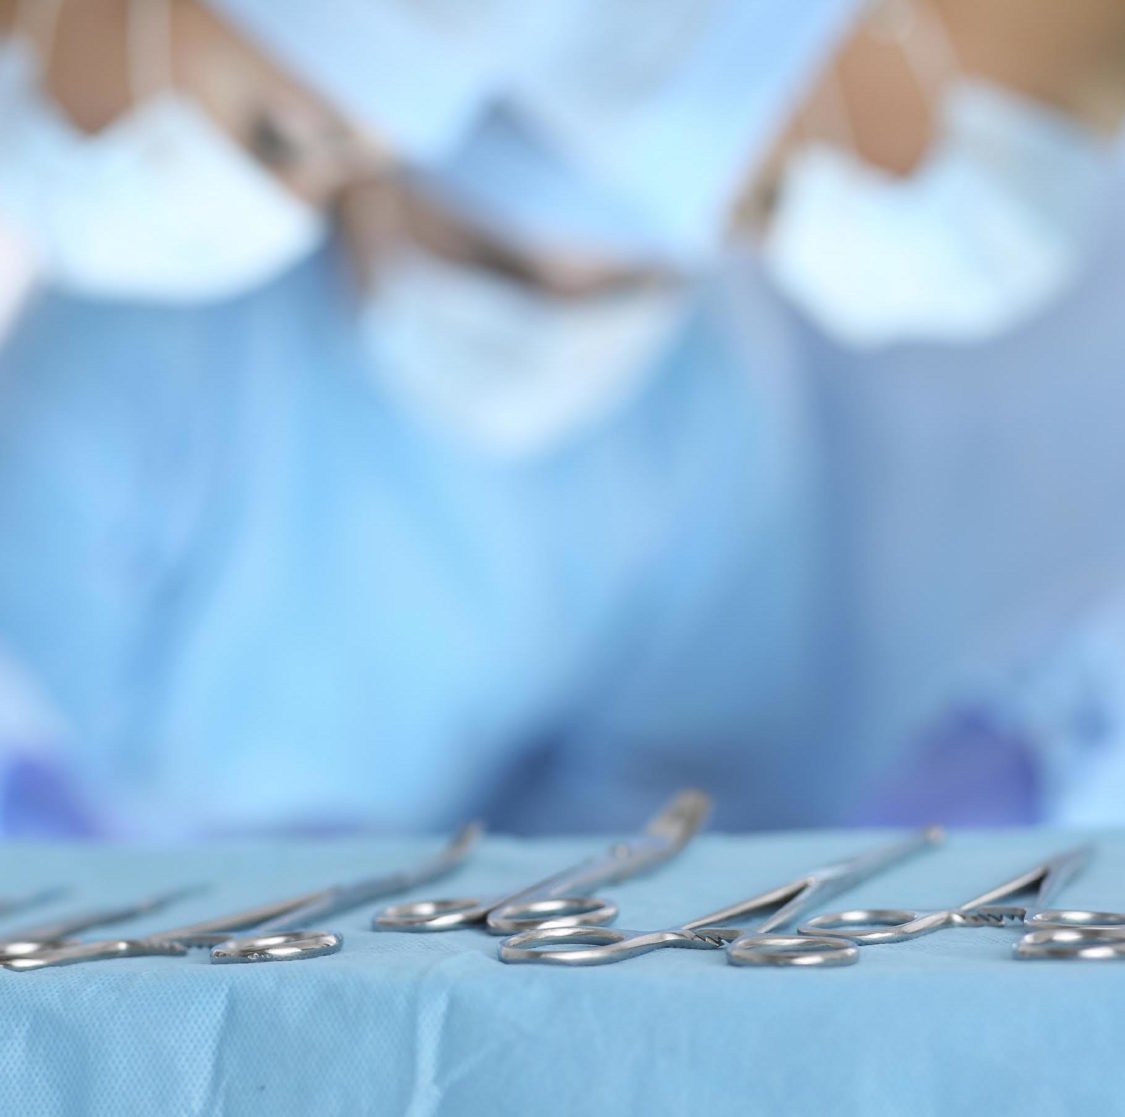 els cinc principis de la cirurgia mínimament invasiva a l'institut maxil·lofacial